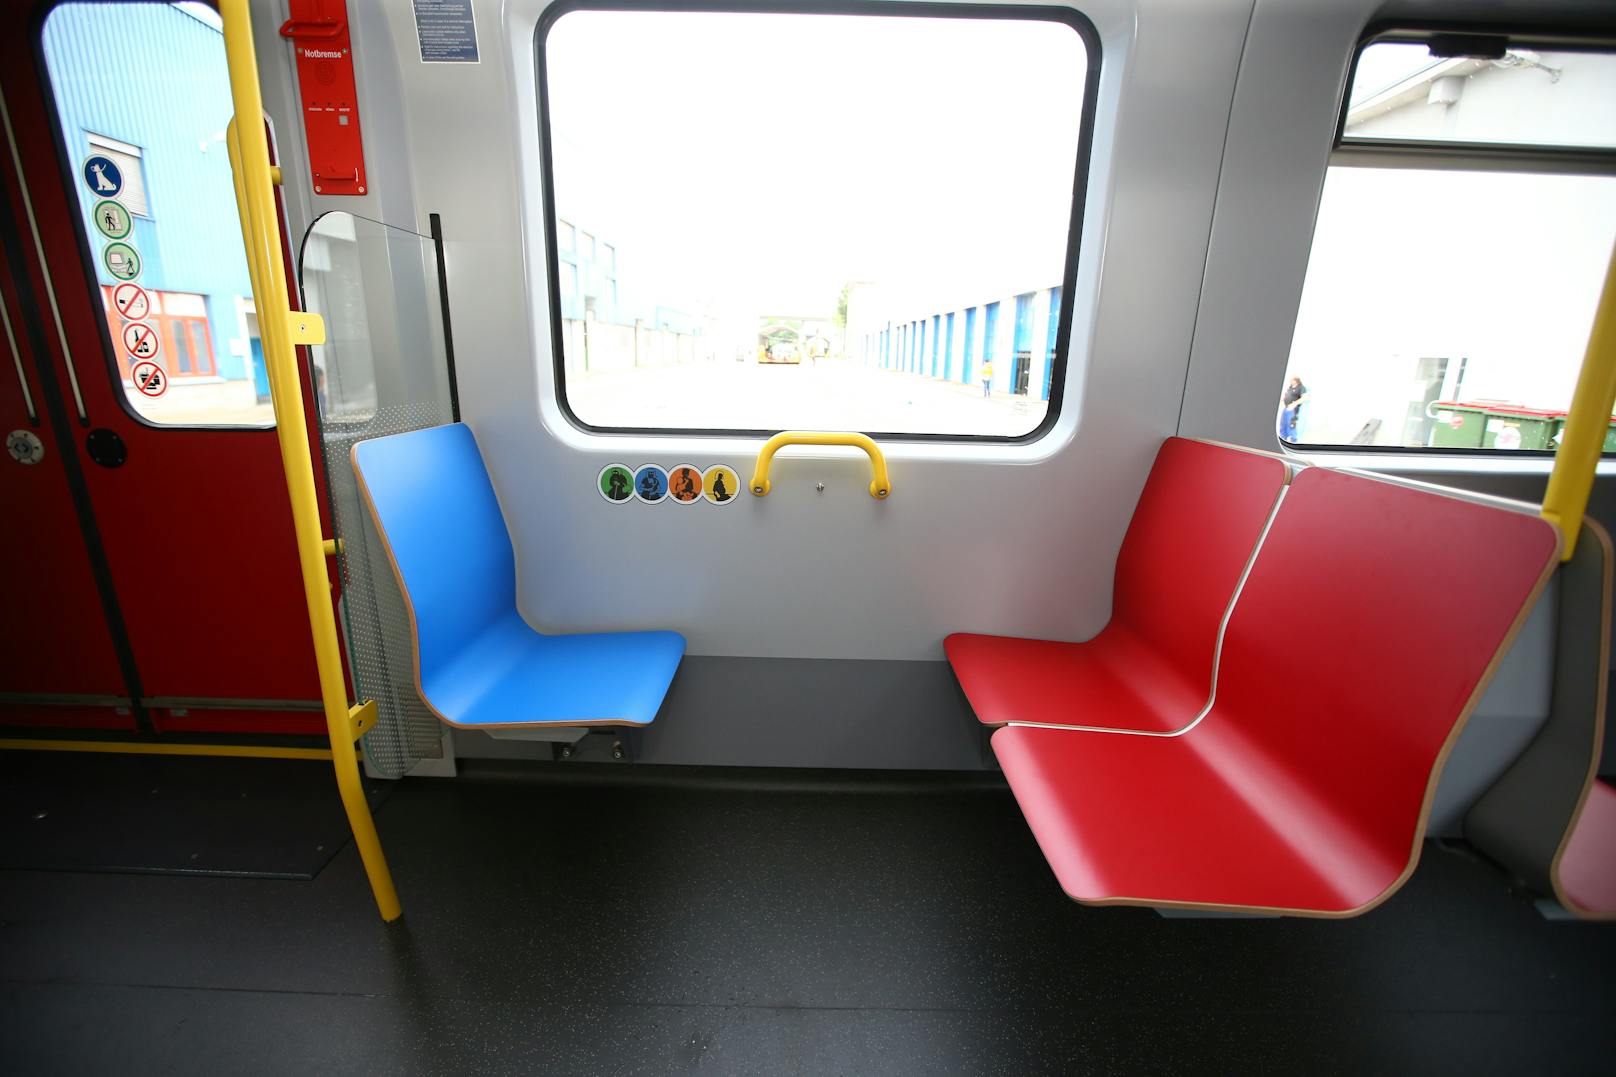 Die Sitze in blauer Farbe kennzeichnen einen Priority-Sitz und sind für Fahrgäste mit eingeschränkter Mobilität vorgesehen.